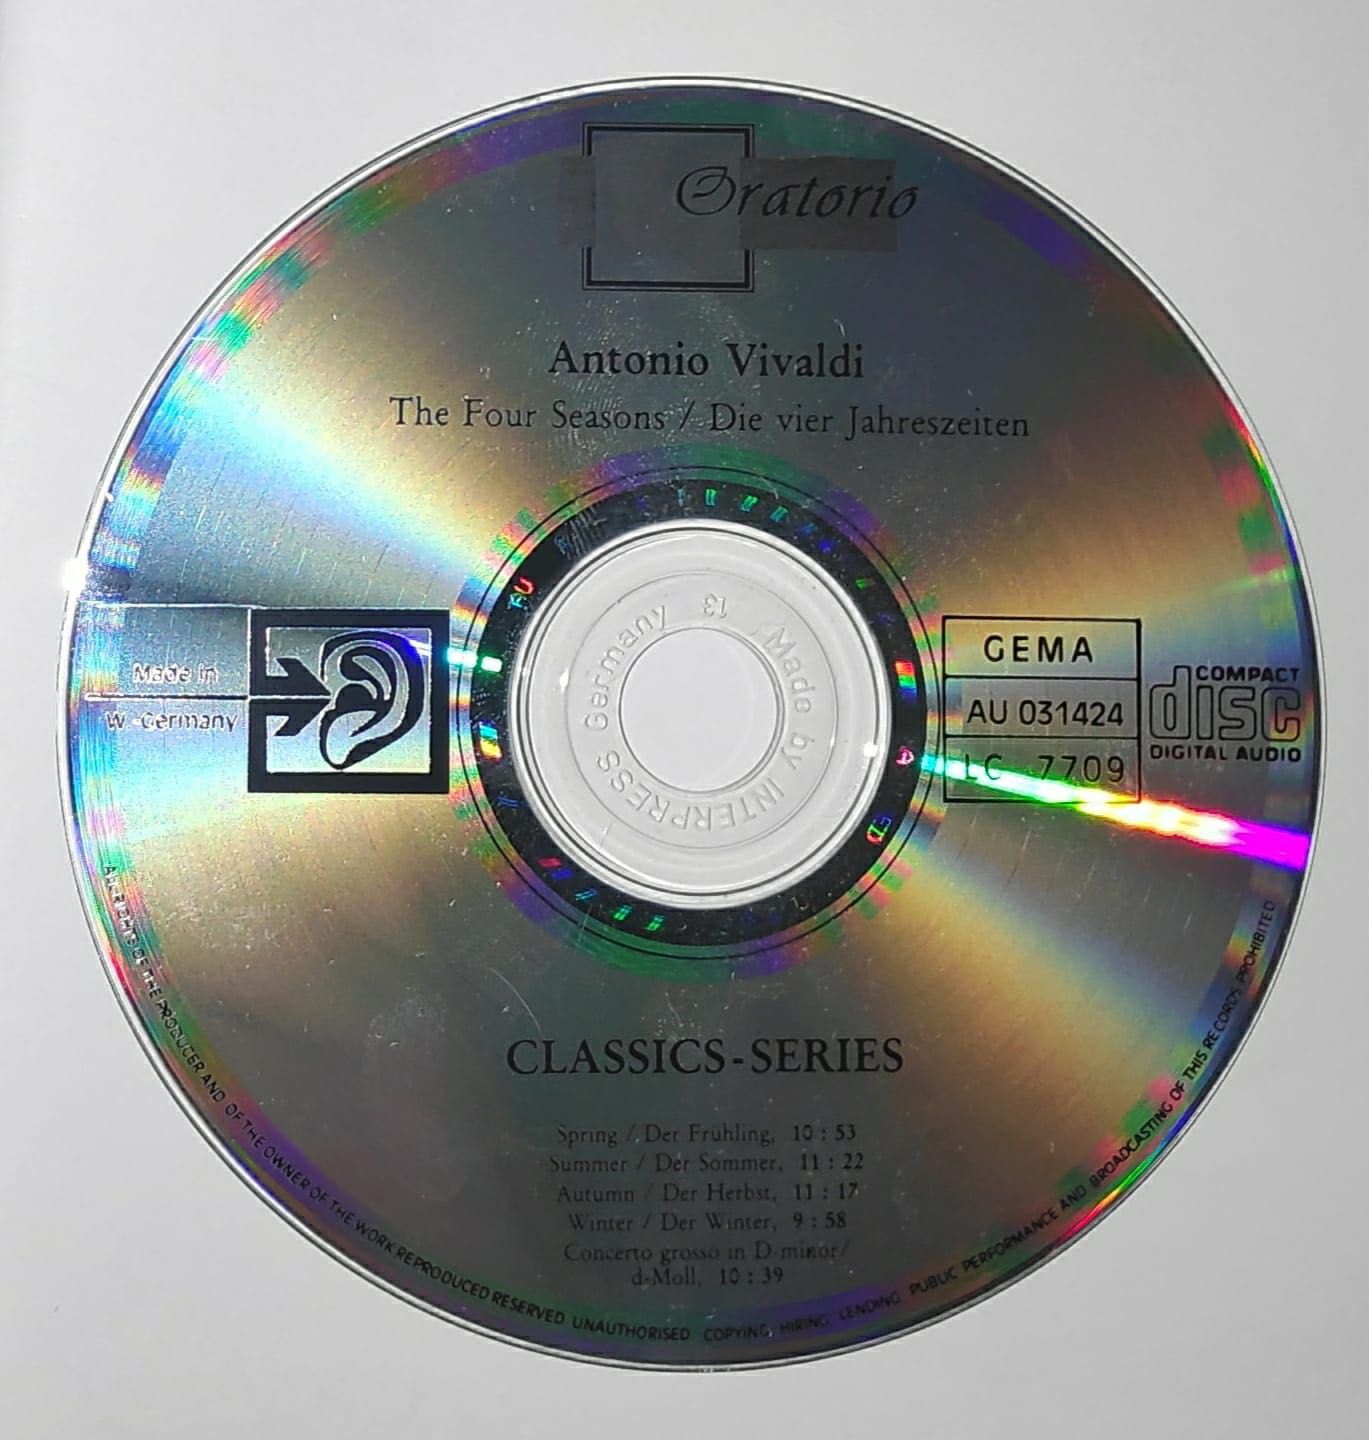 Antonio Vivaldi-Les Quatre Saisons, Album complet CD muzica